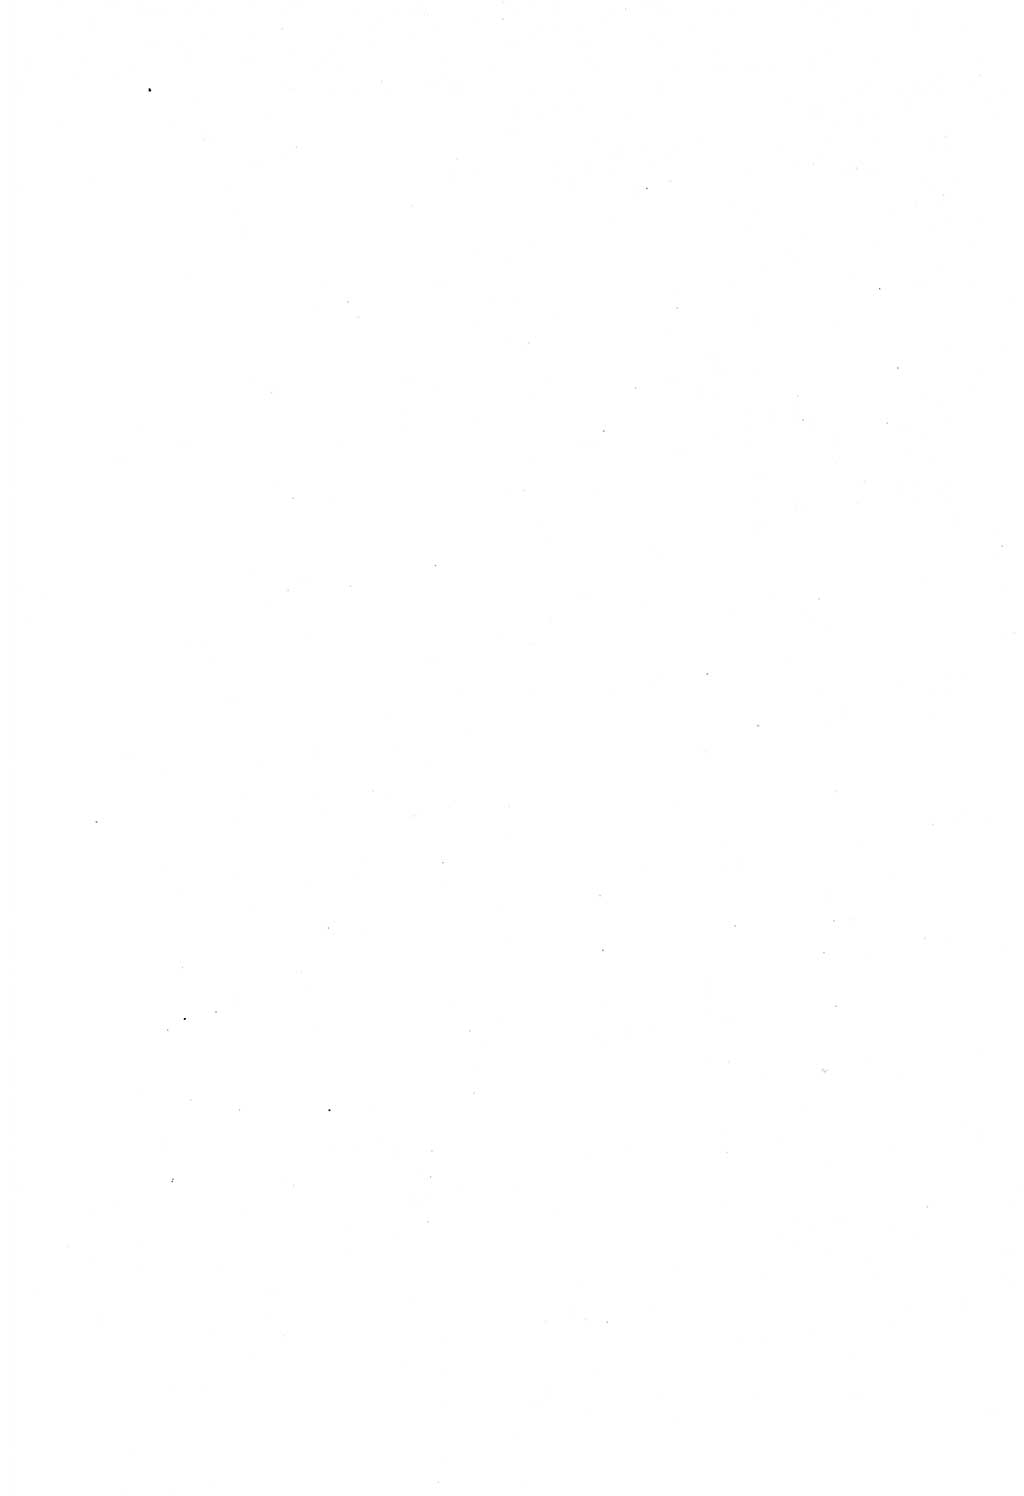 Diskussionsbeiträge, 10. Tagung des ZK (Zentralkomitee) der SED (Sozialistische Einheitspartei Deutschlands) [Deutsche Demokratische Republik (DDR)] 1989, Seite 326 (Disk.-Beitr. 10. Tg. ZK SED DDR 1989, S. 326)